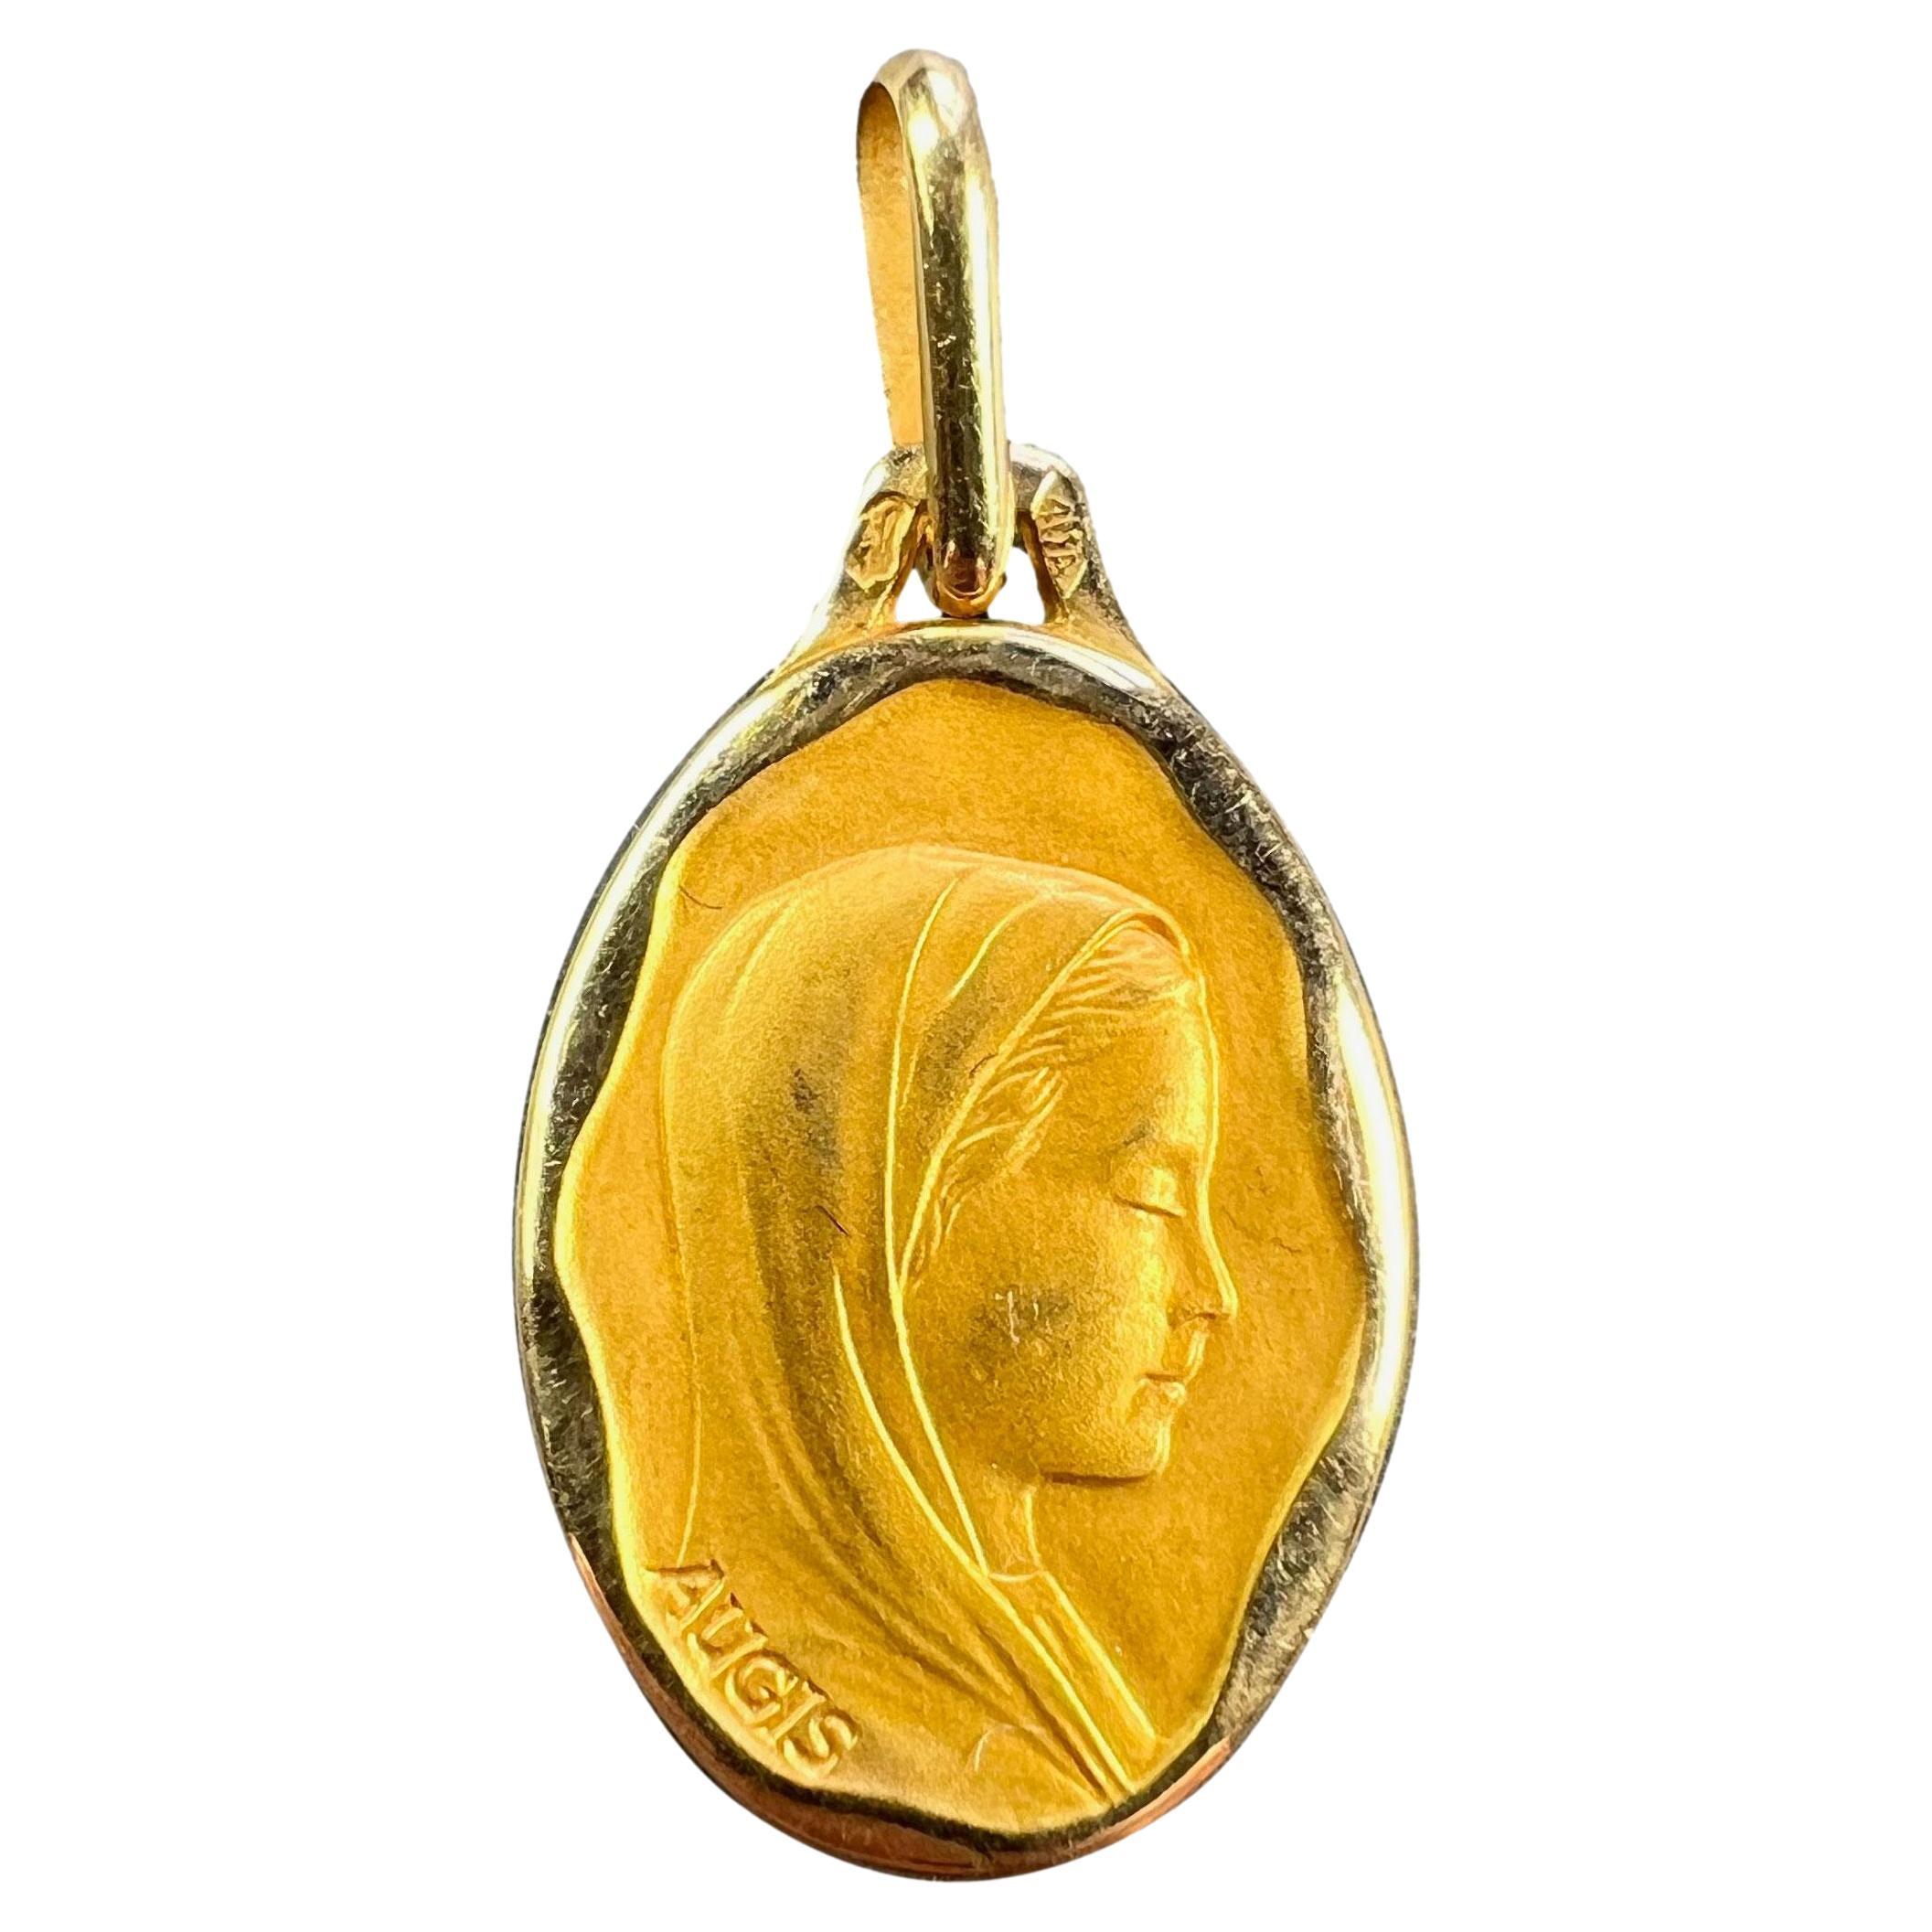 Pendentif français Augis Virgin Mary en or jaune 18 carats avec médaille religieuse